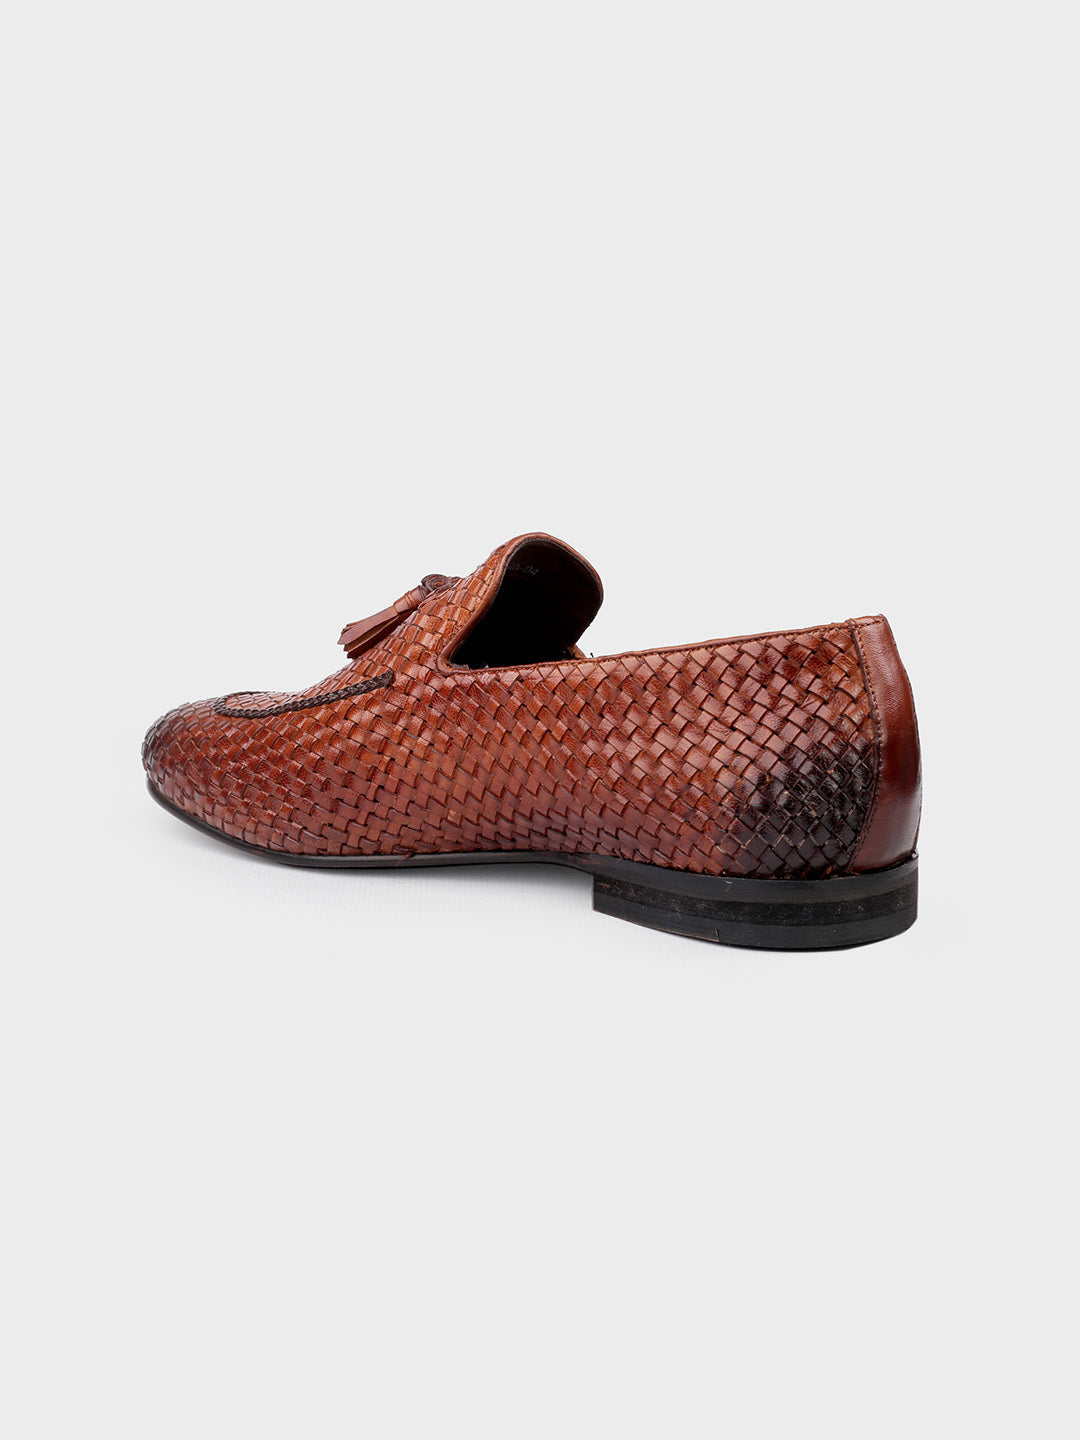 Tan Leather Men's Slip-On Tassel Shoes